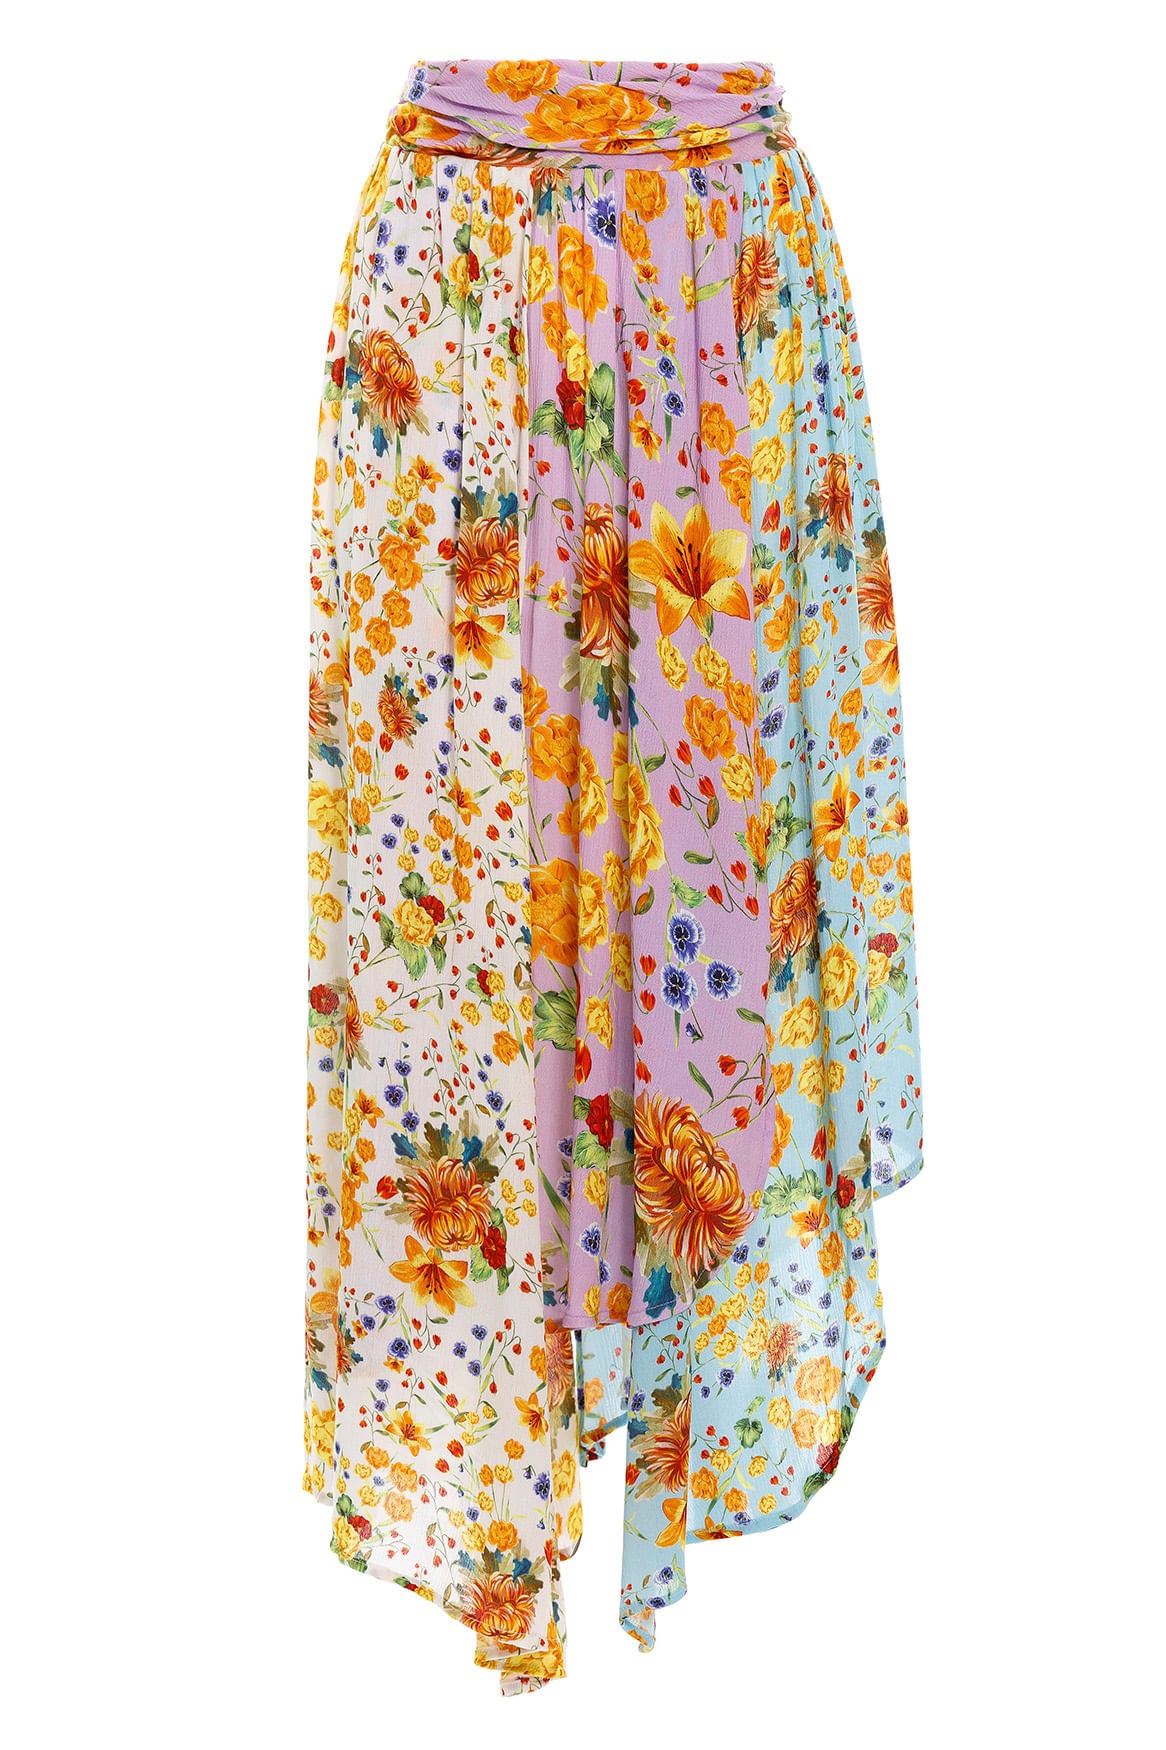 
                  
                    Bright Flower Print Skirt
                  
                